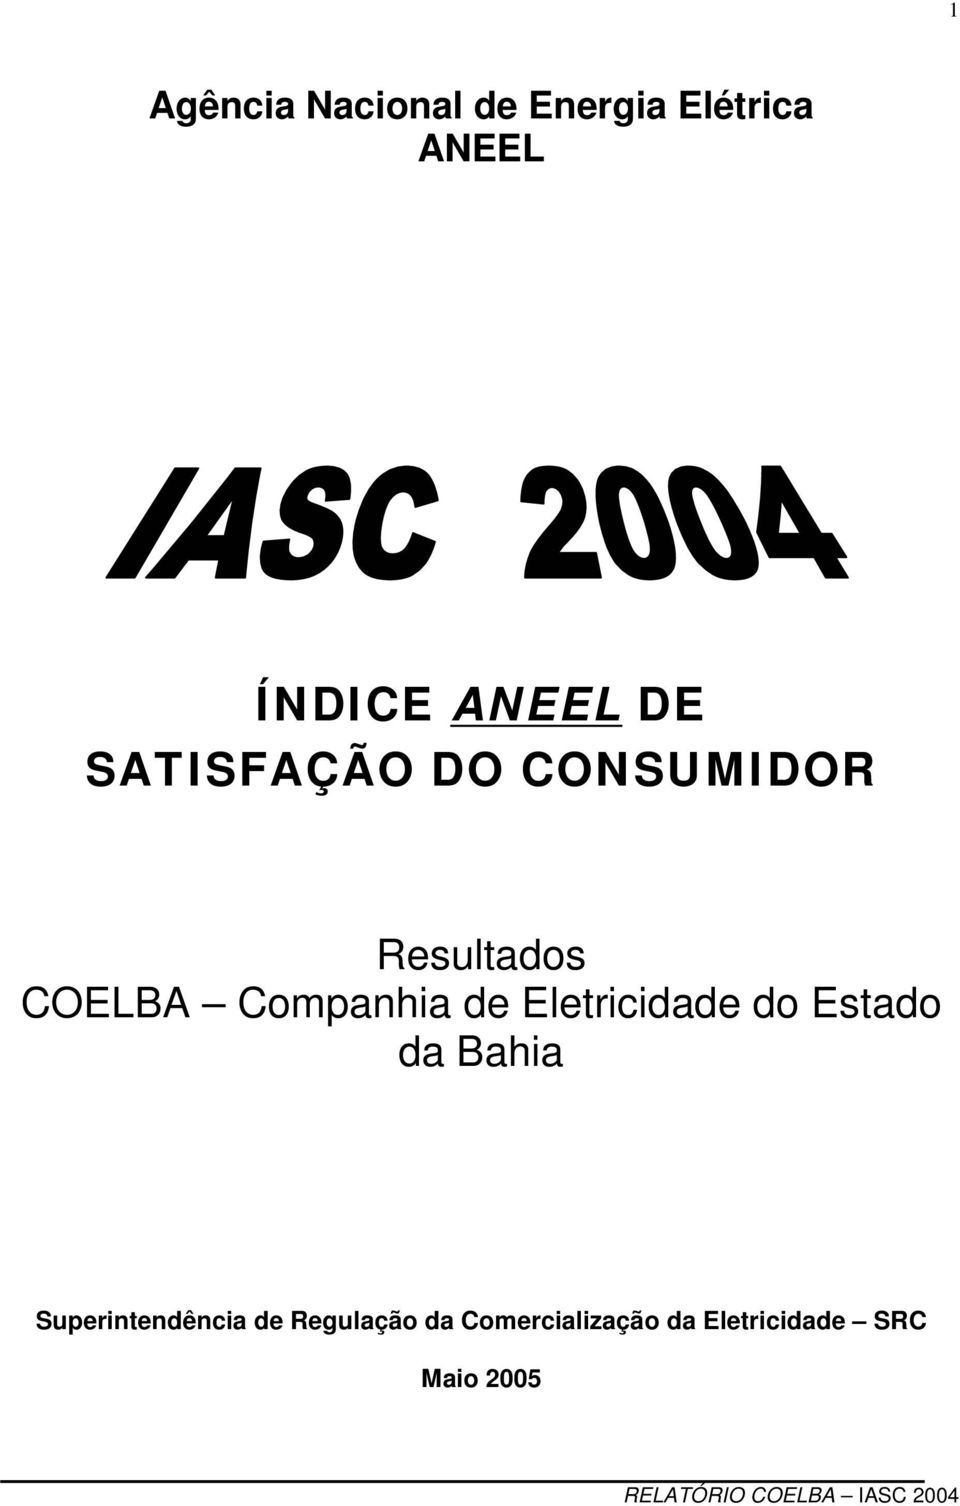 Companhia de Eletricidade do Estado da Bahia